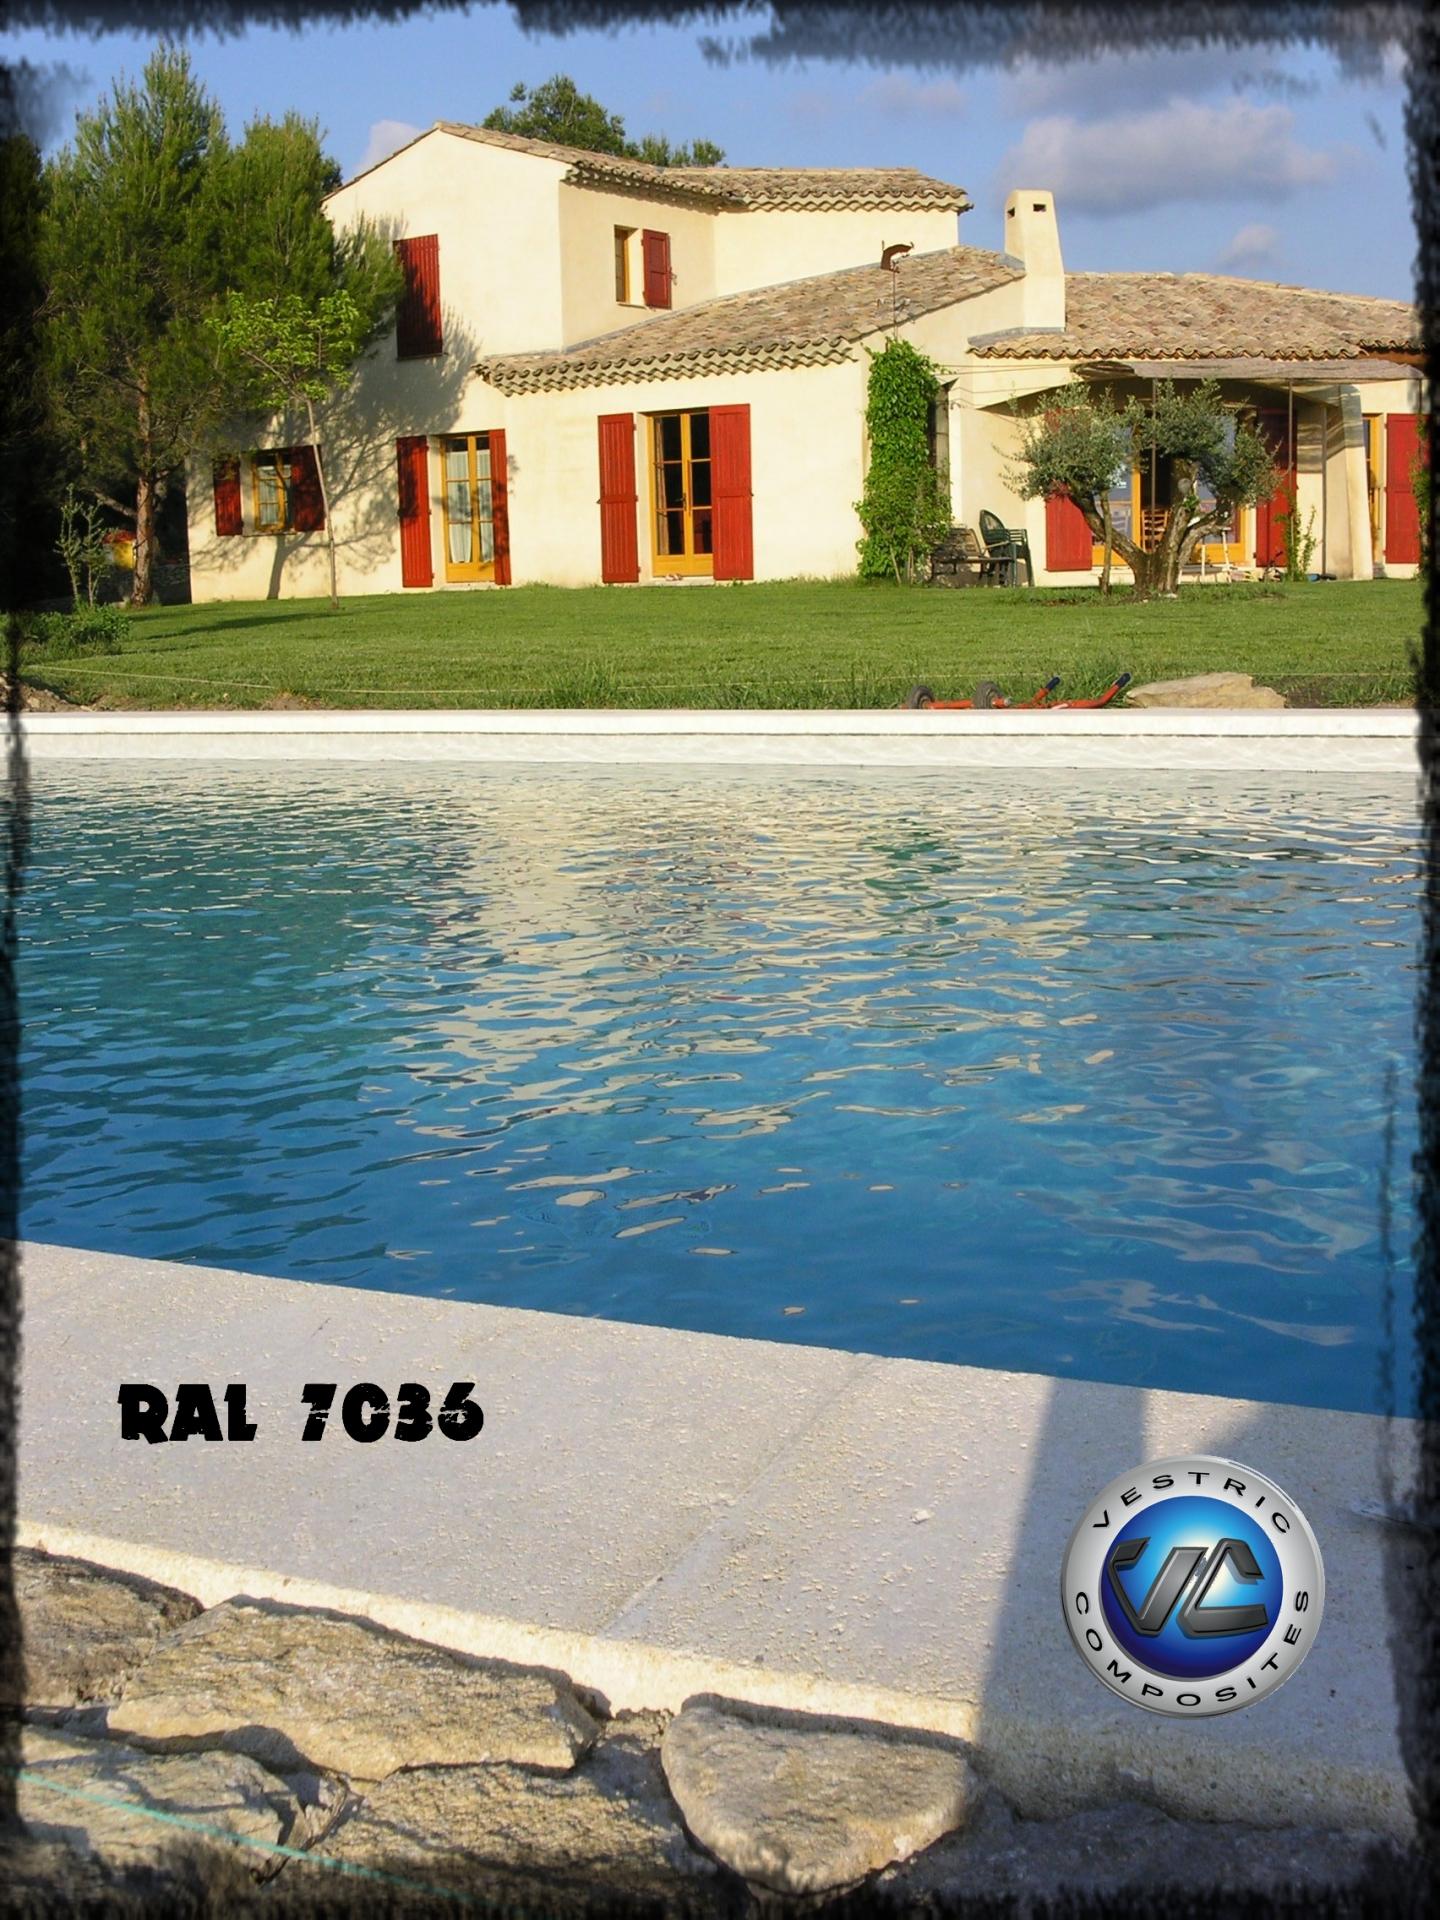 Ral 7036 gris platine piscine en eau couleur resine gel coat vestric composites 1